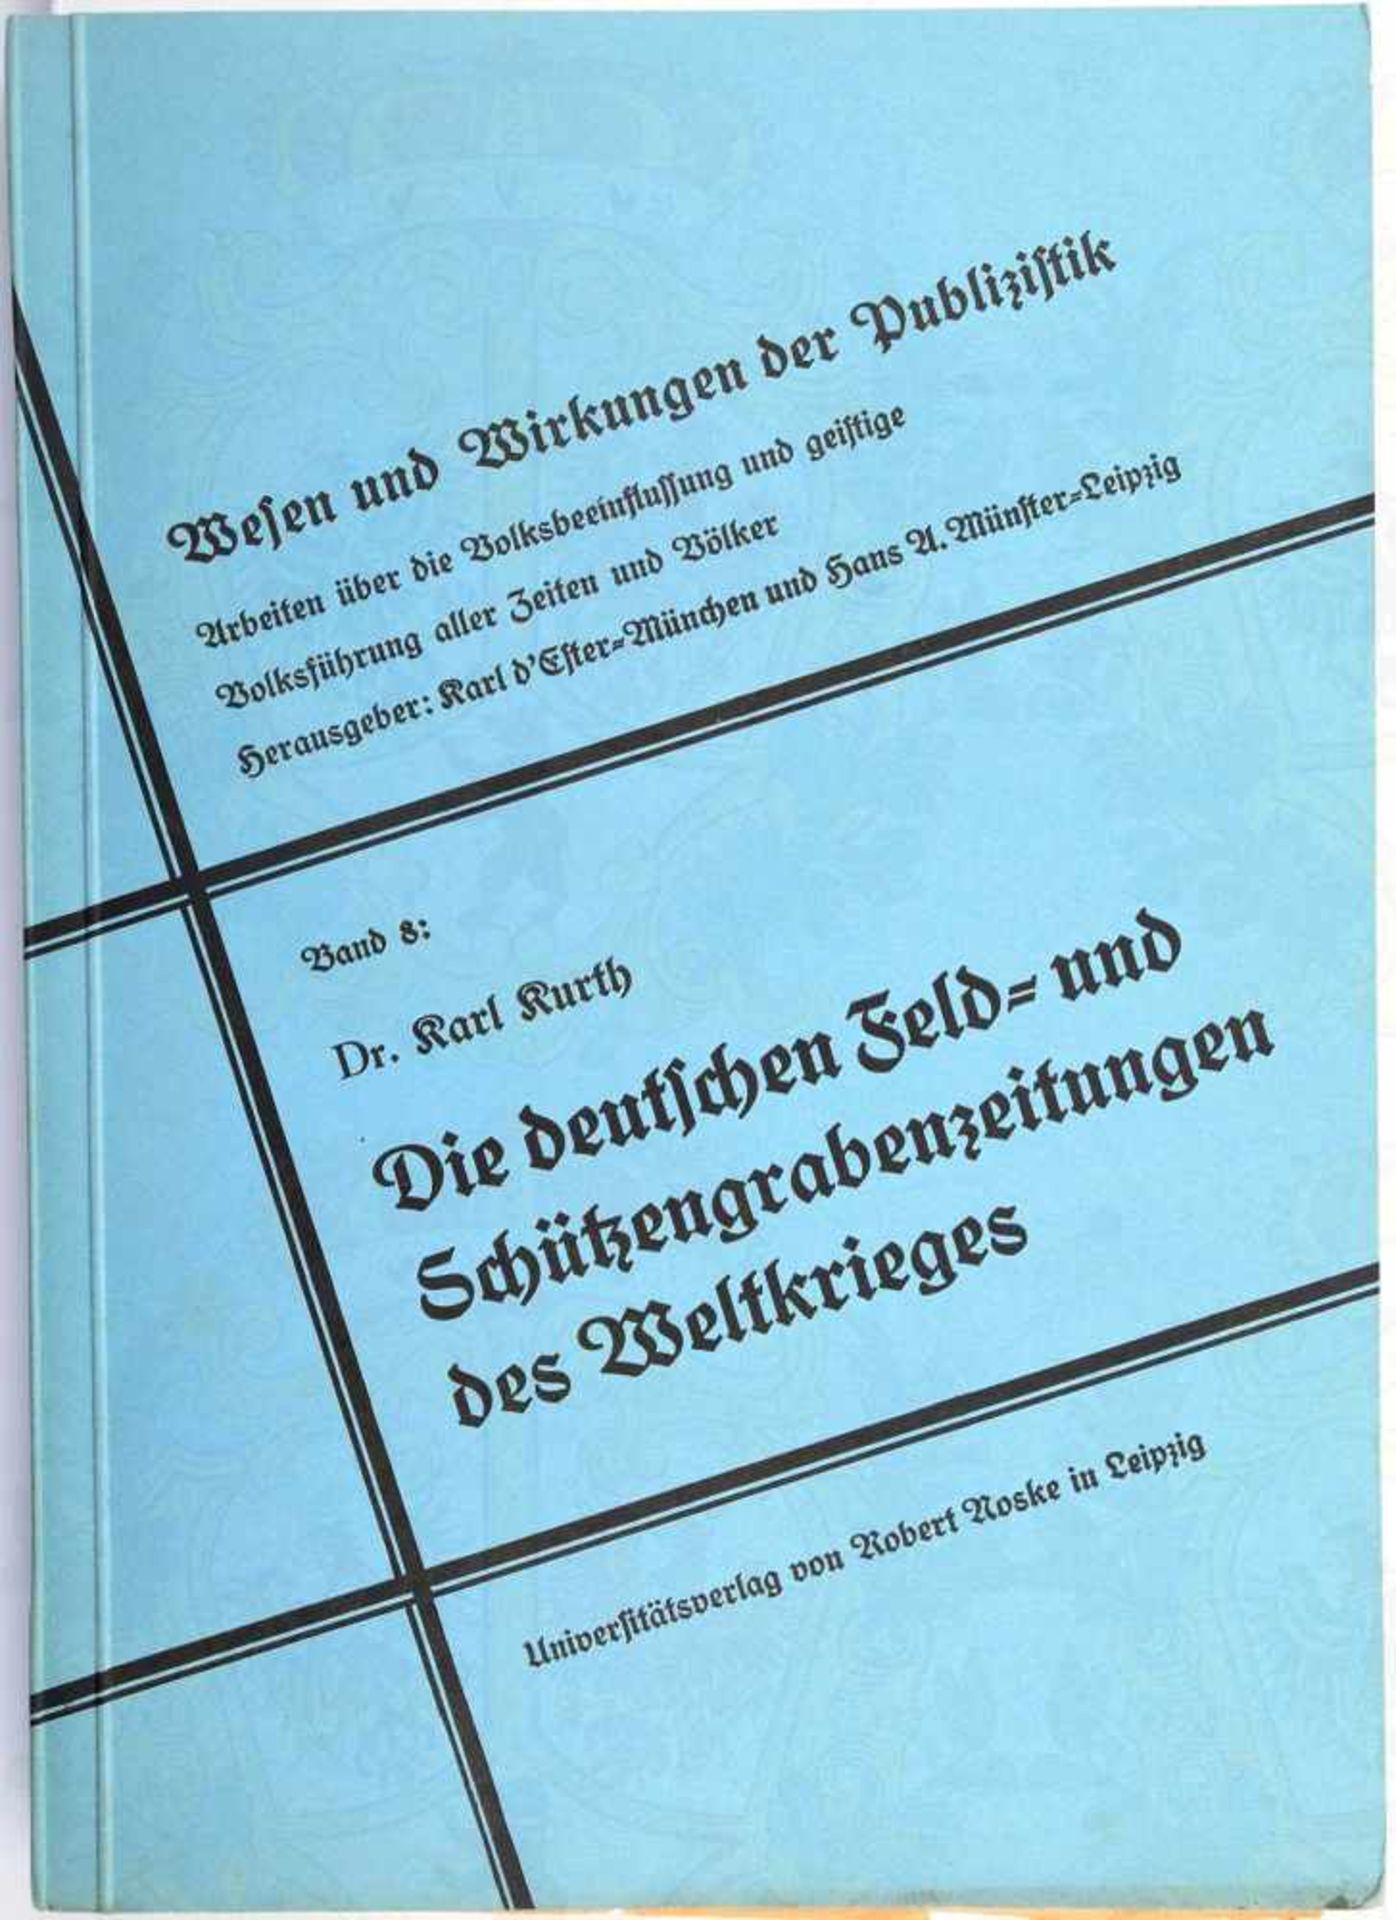 DIE DEUTSCHEN FELD- UND SCHÜTZENGRABENZEITUNGEN „des Weltkrieges“, Dr. K. Kurth, Leipzig 1937, 264